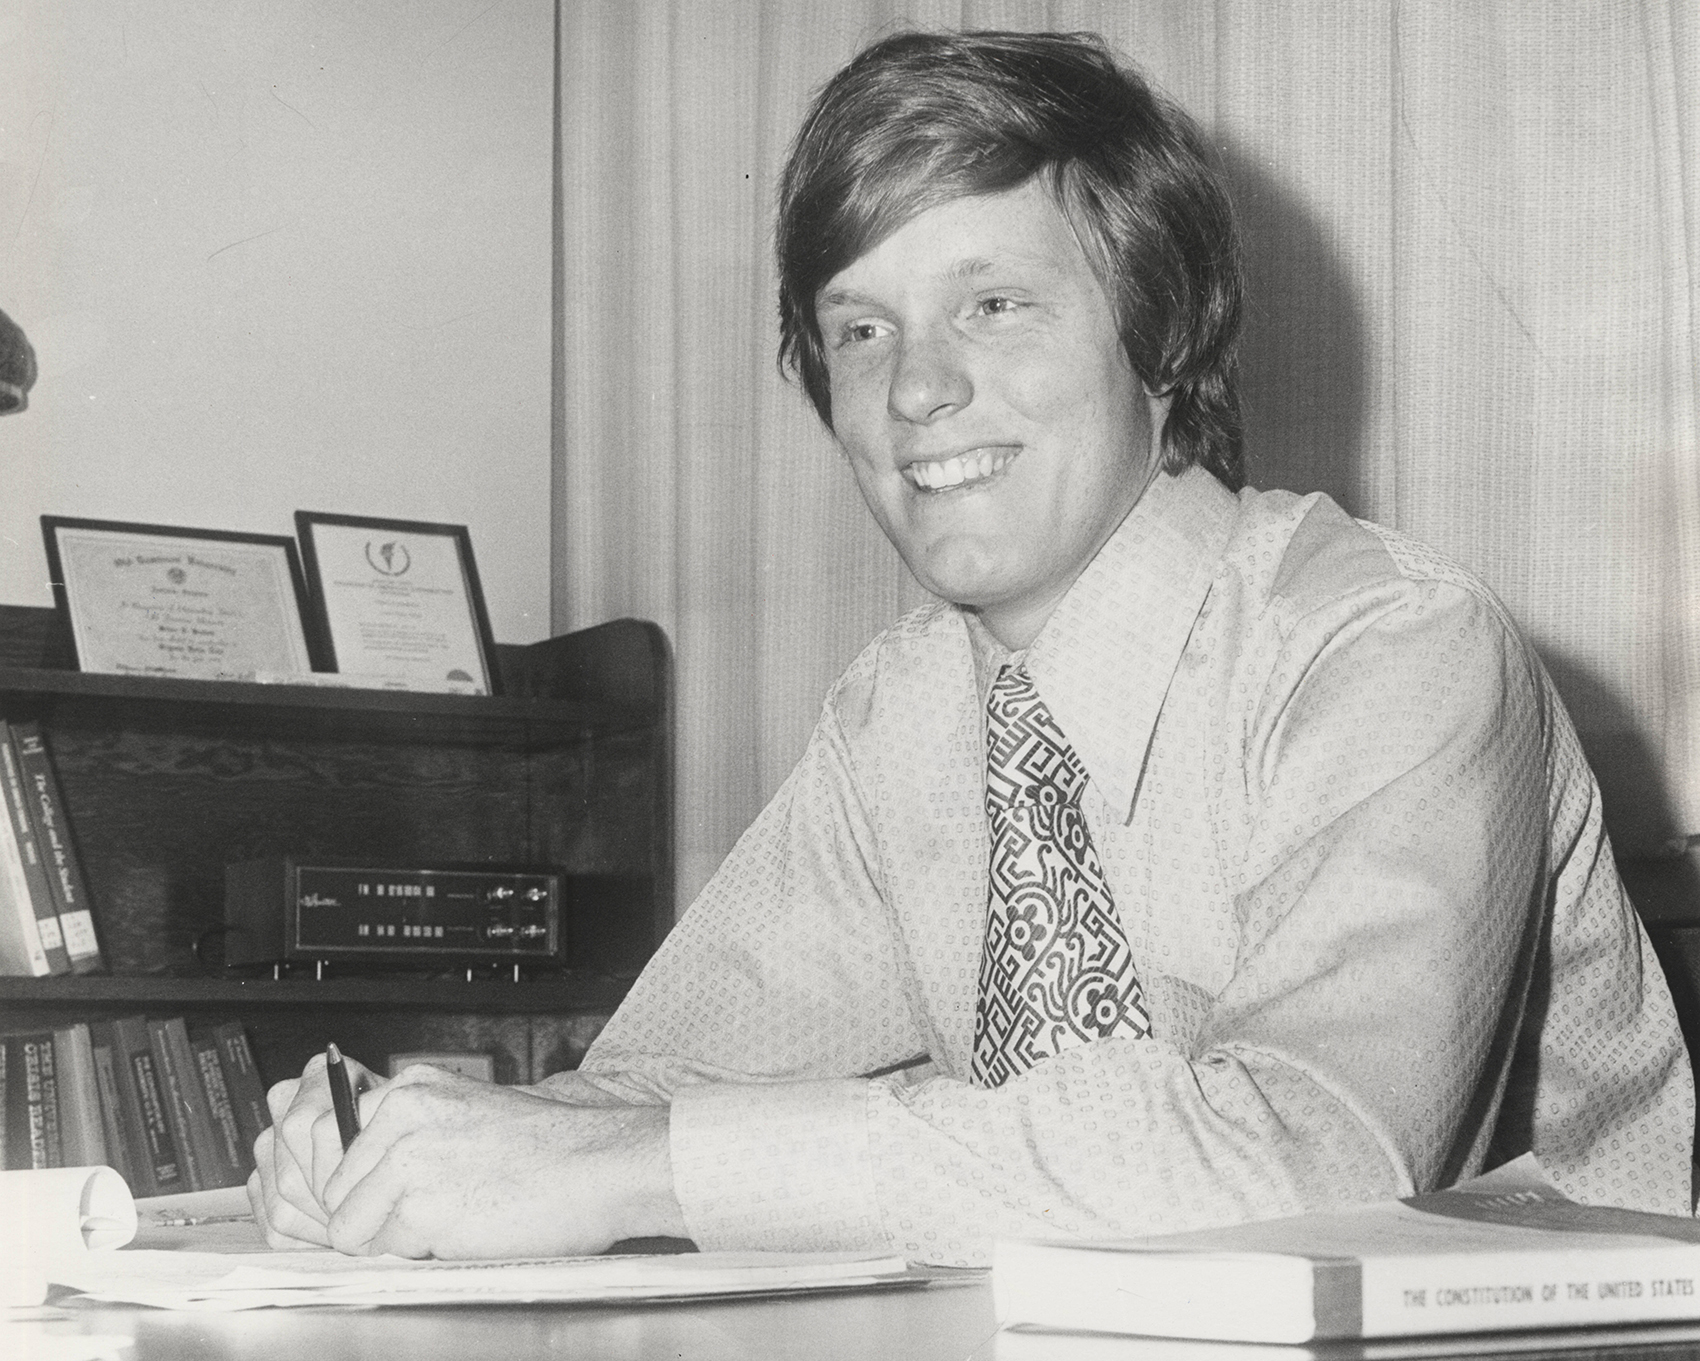 Bruce Bishop, 1970s